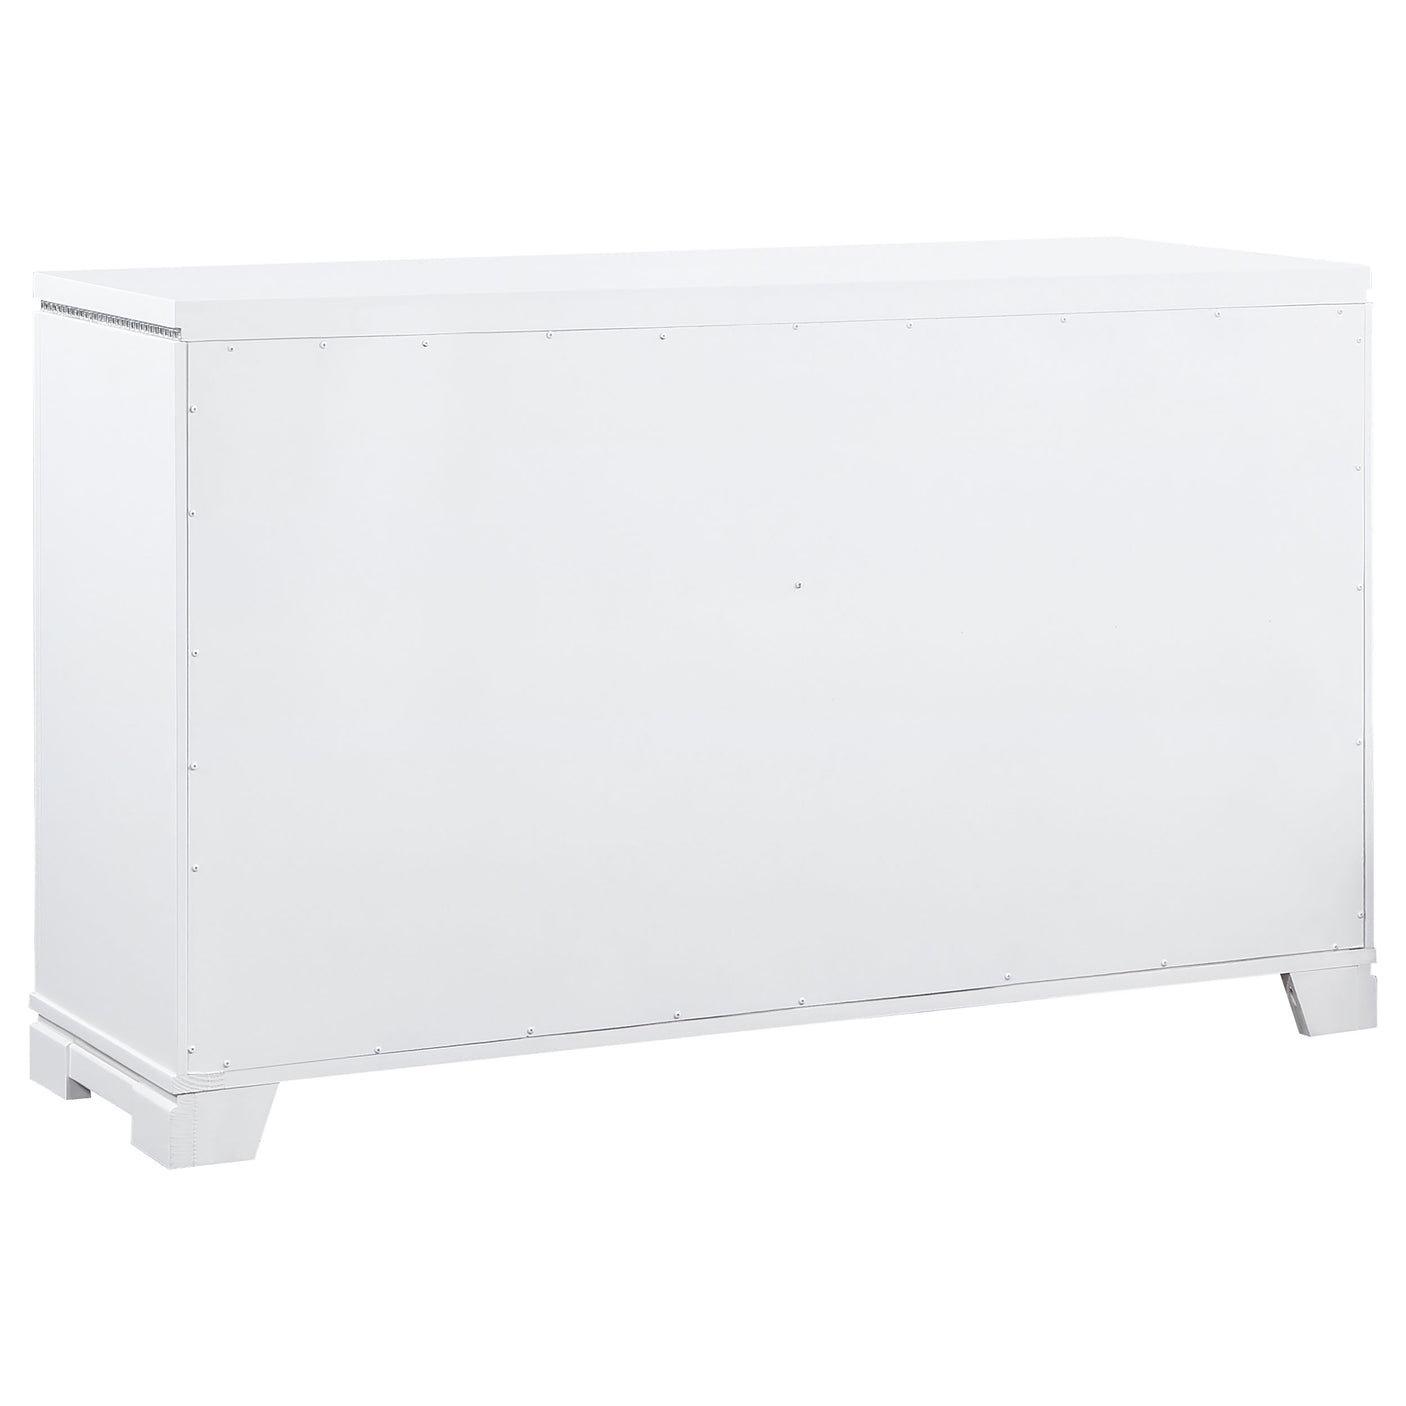 Dresser - Eleanor Rectangular 6-drawer Dresser White